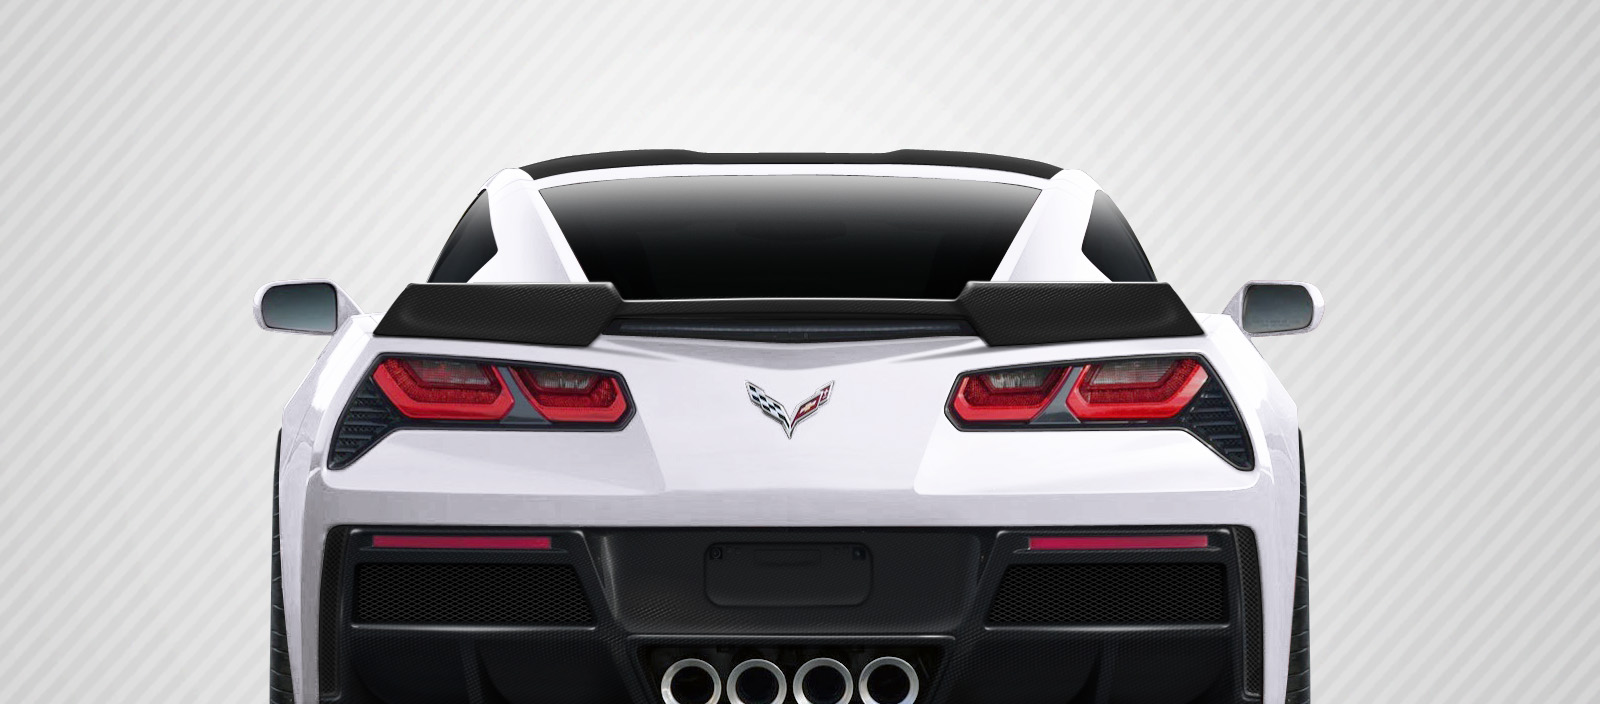 C7 Corvette Stingray Duraflex GT Concept Body Kit, 4 Piece Package